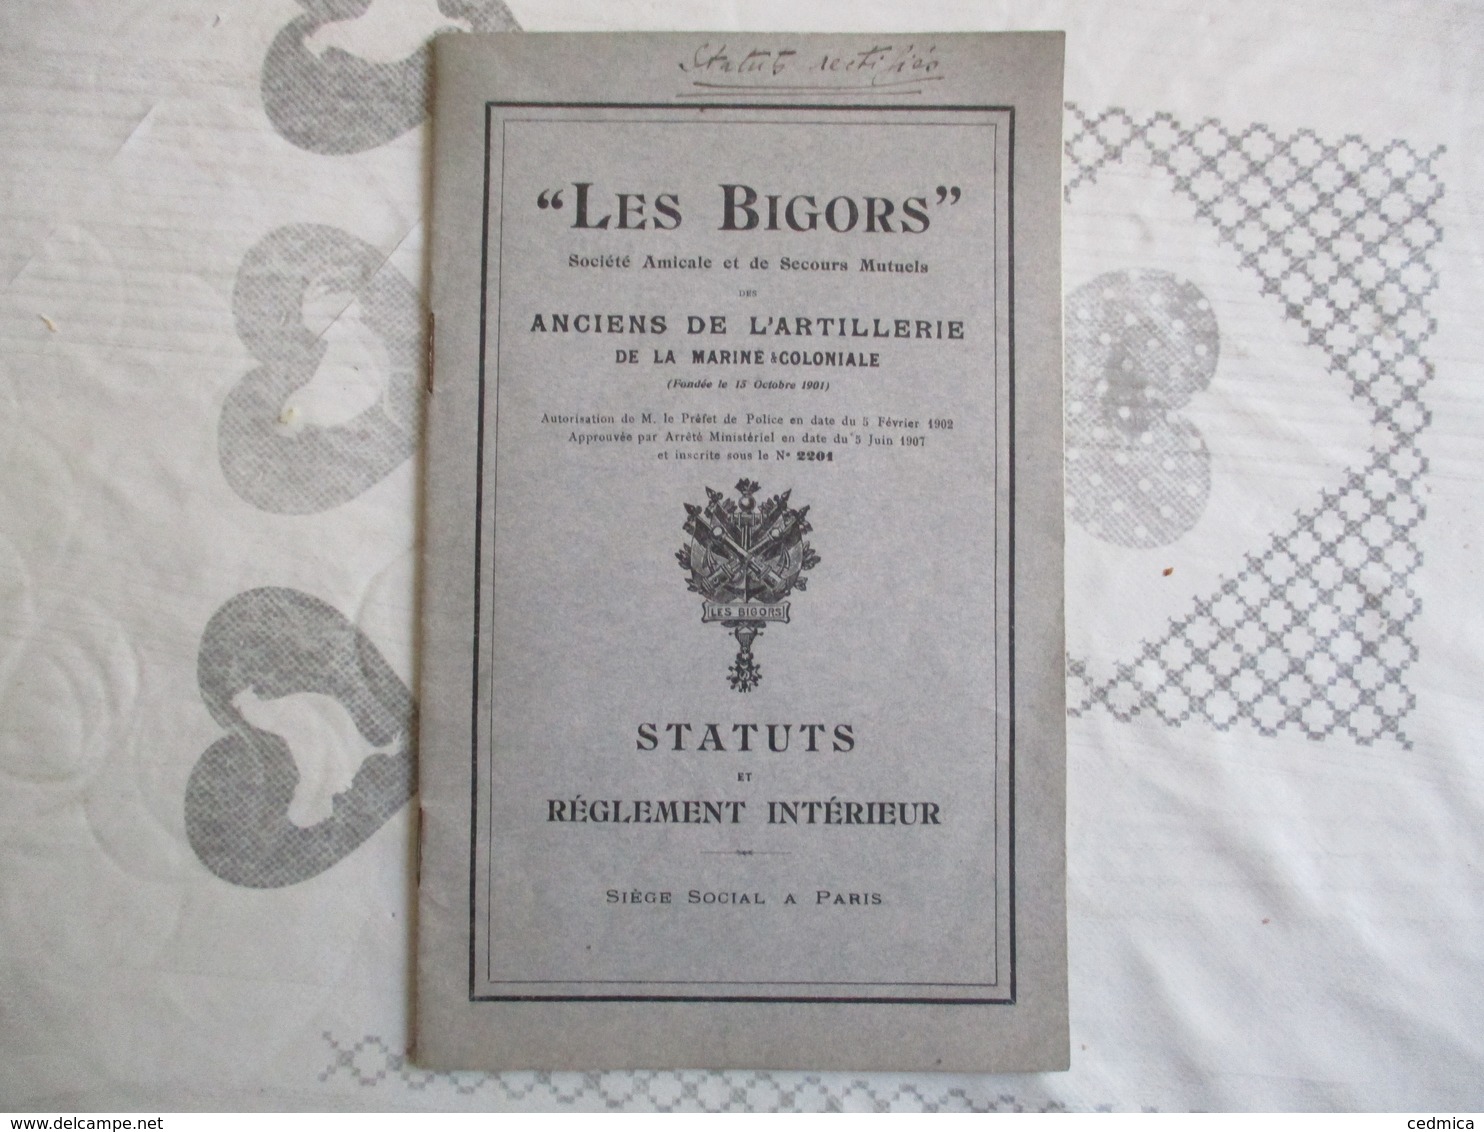 ANCIENS DE LA L'ARTILLERIE DE LA MARINE COLONIALE "LES BIGORS" SOCIETE AMICALE ET DE SECOURS MUTUELS STATUTS 5 JUIN 1907 - Documentos